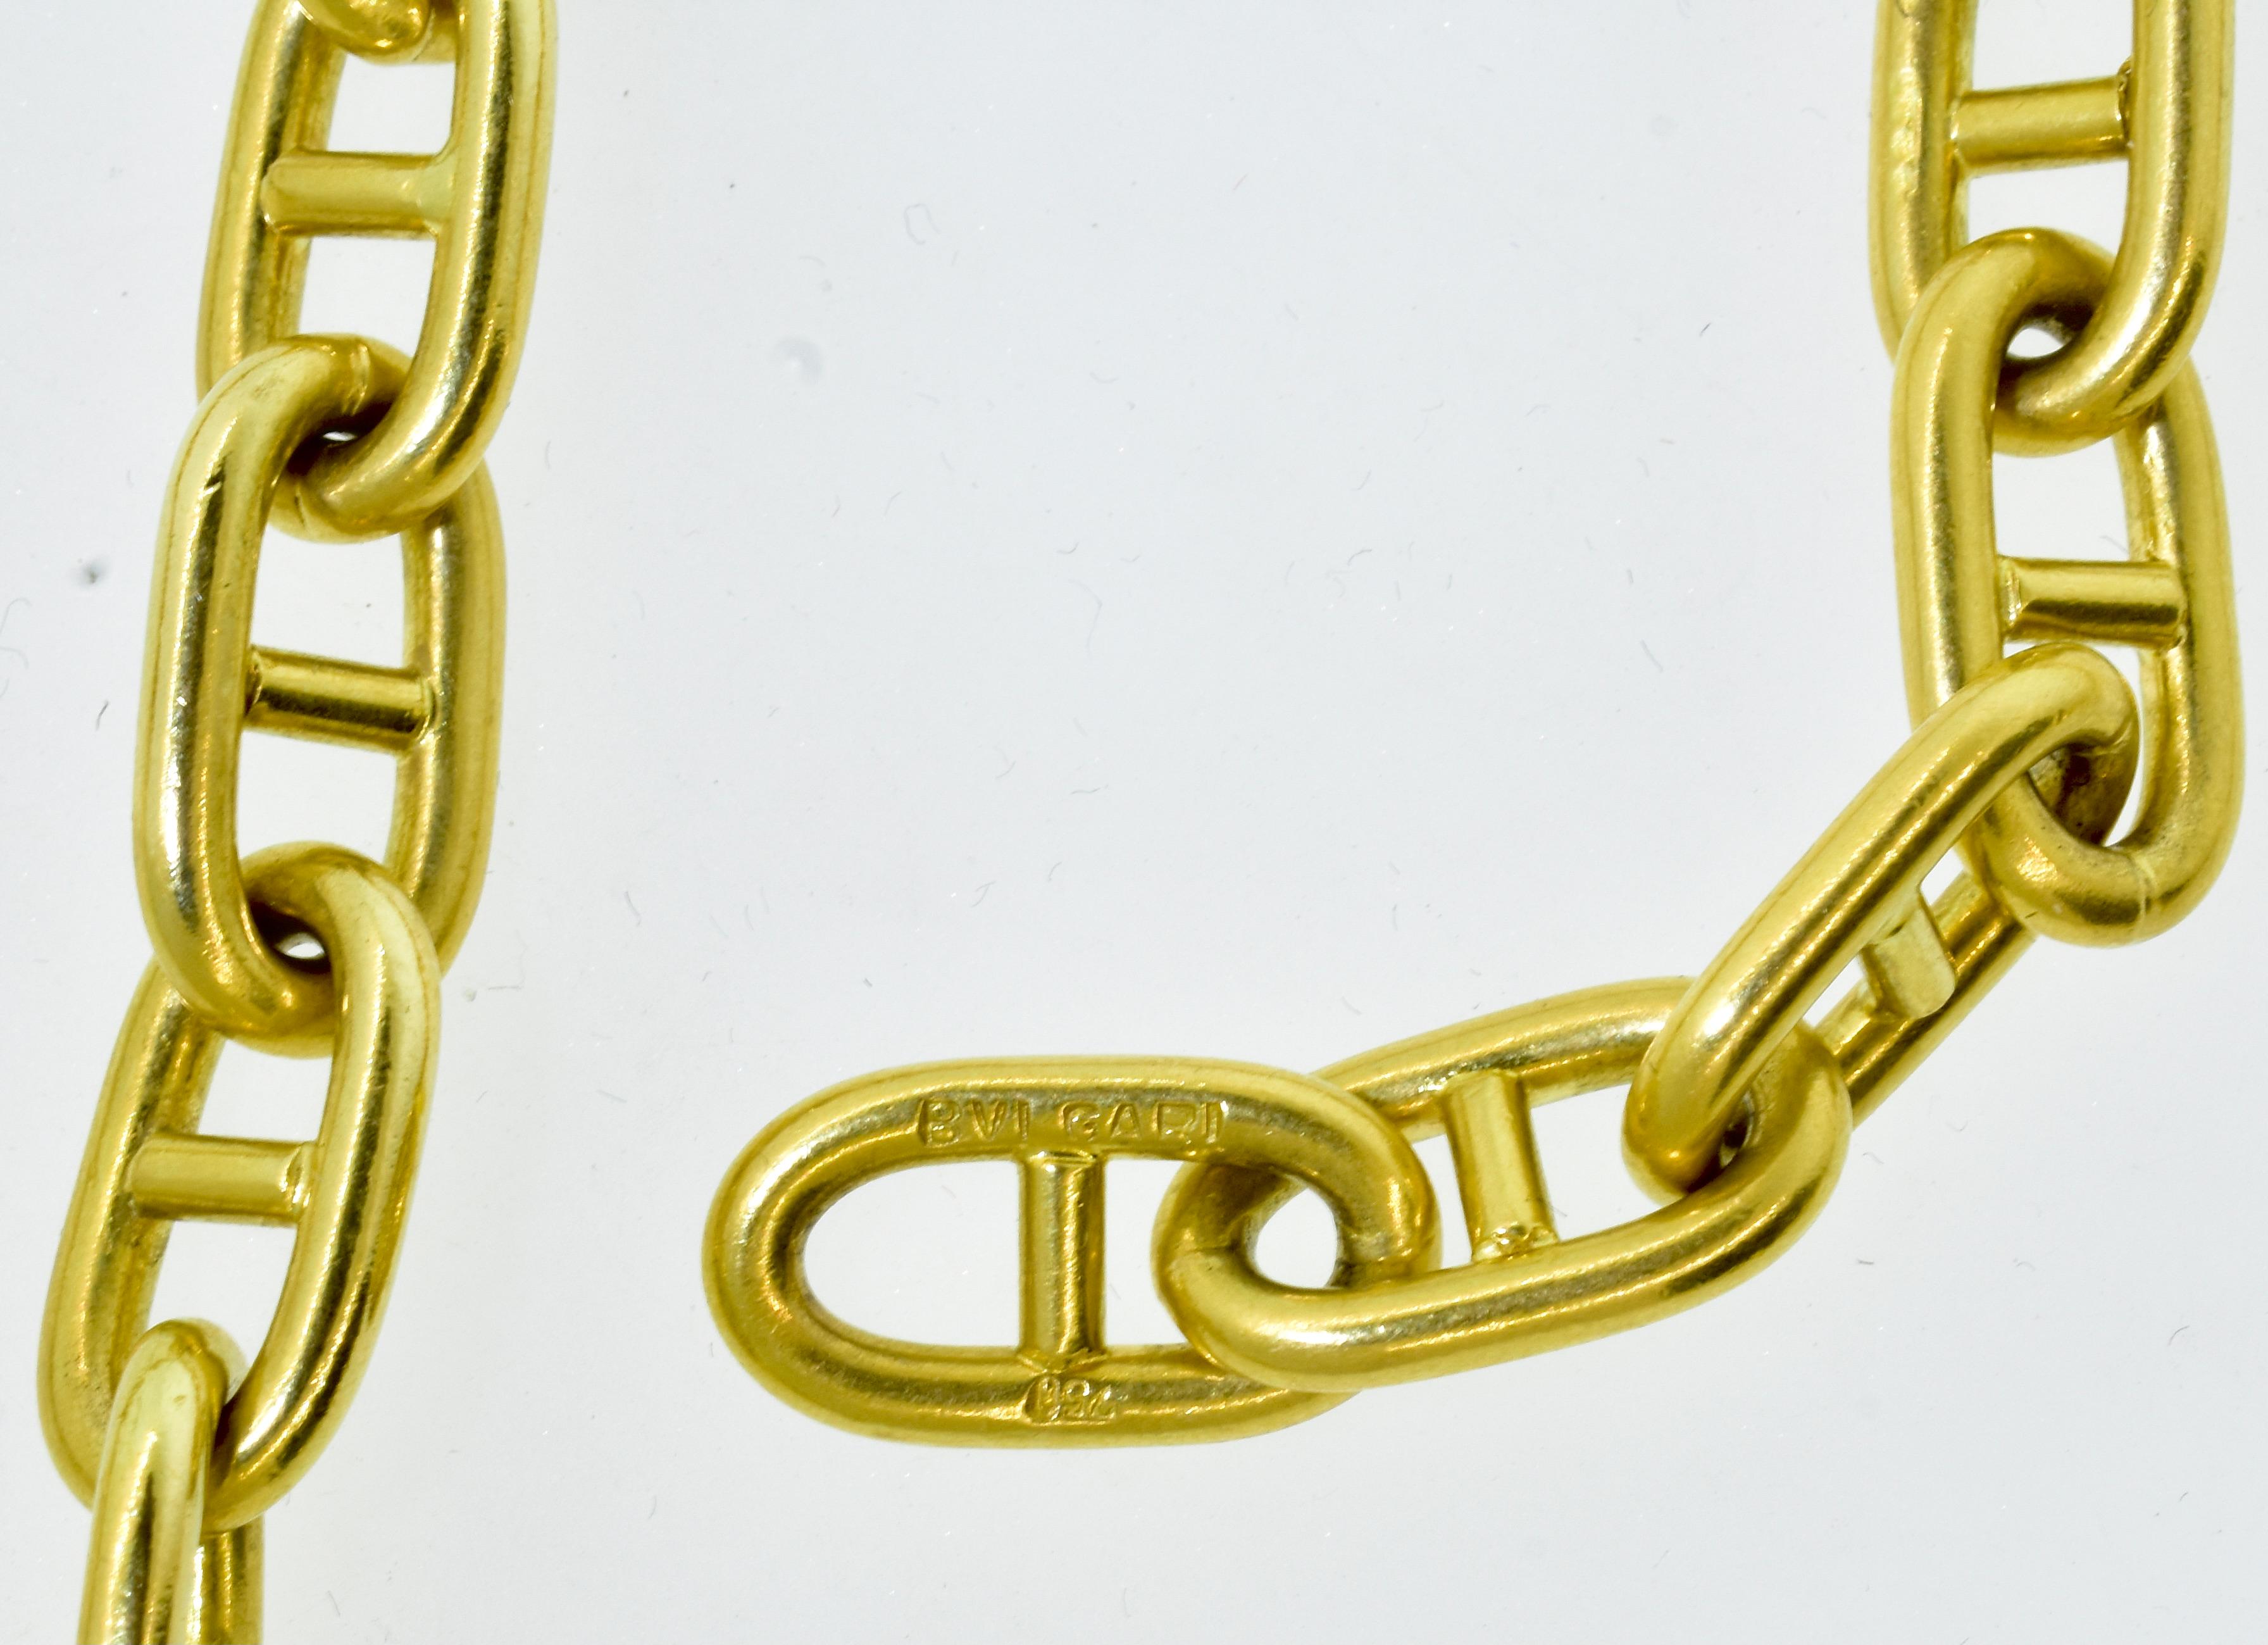 18 karat gold chain worth